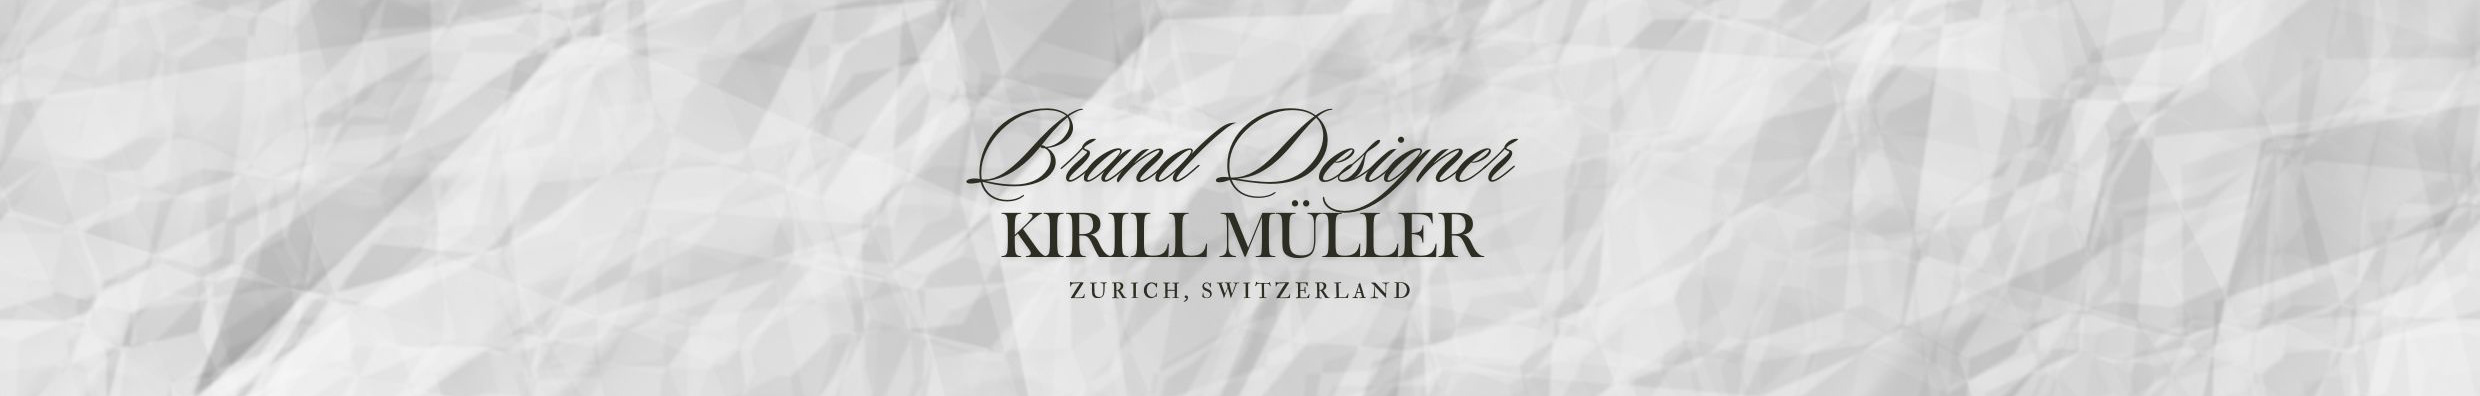 Kirill Müller's profile banner